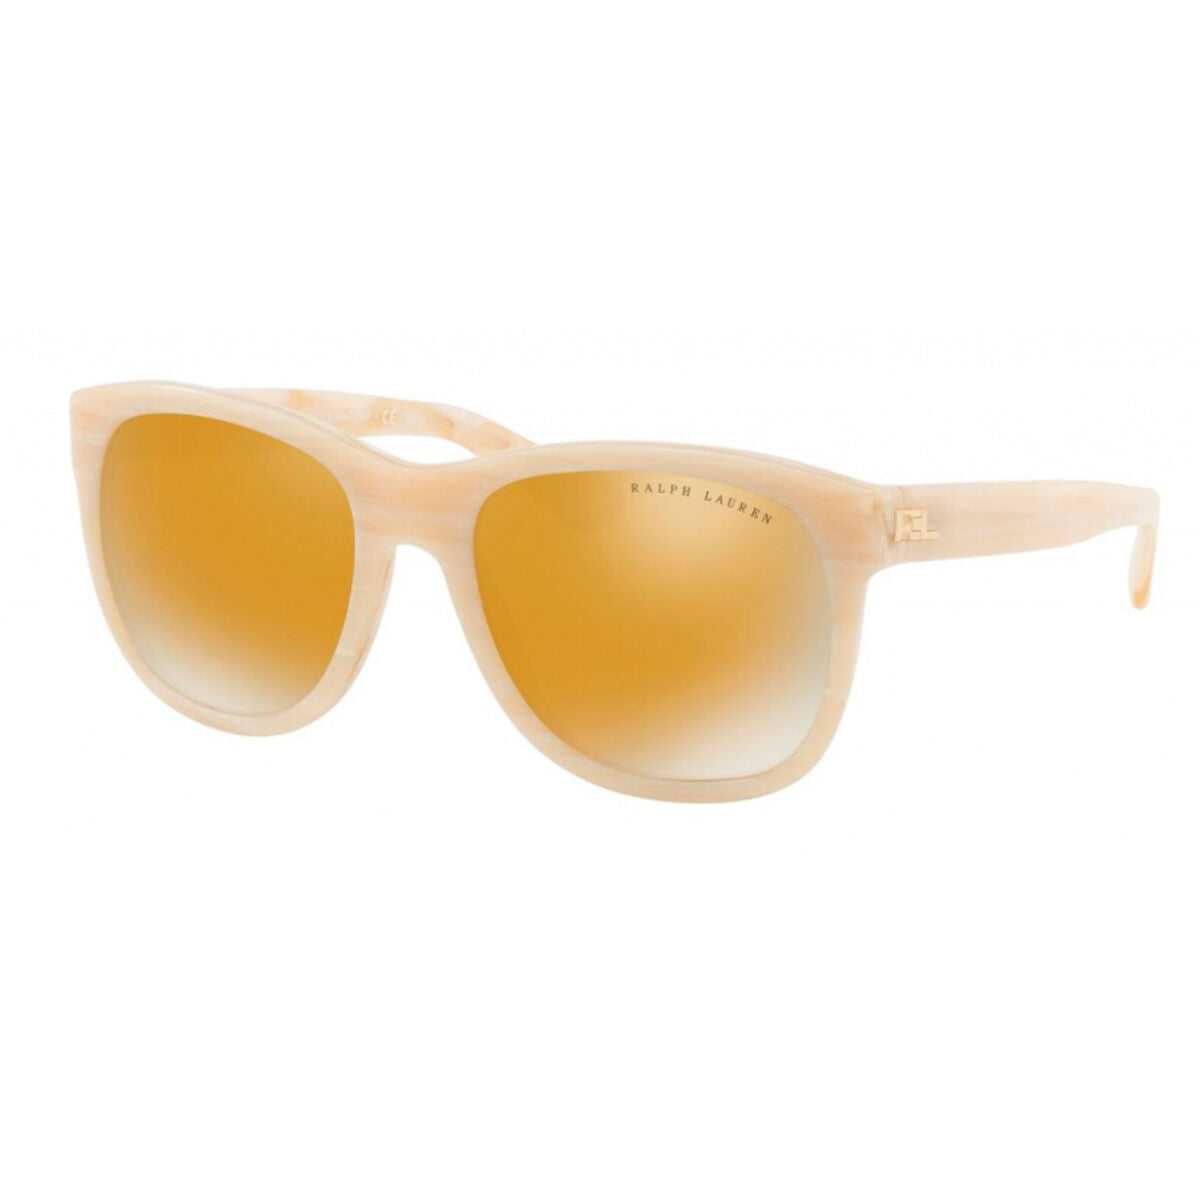 Kaufe Herrensonnenbrille Ralph Lauren RL8141-56467P ø 50 mm bei AWK Flagship um € 105.00